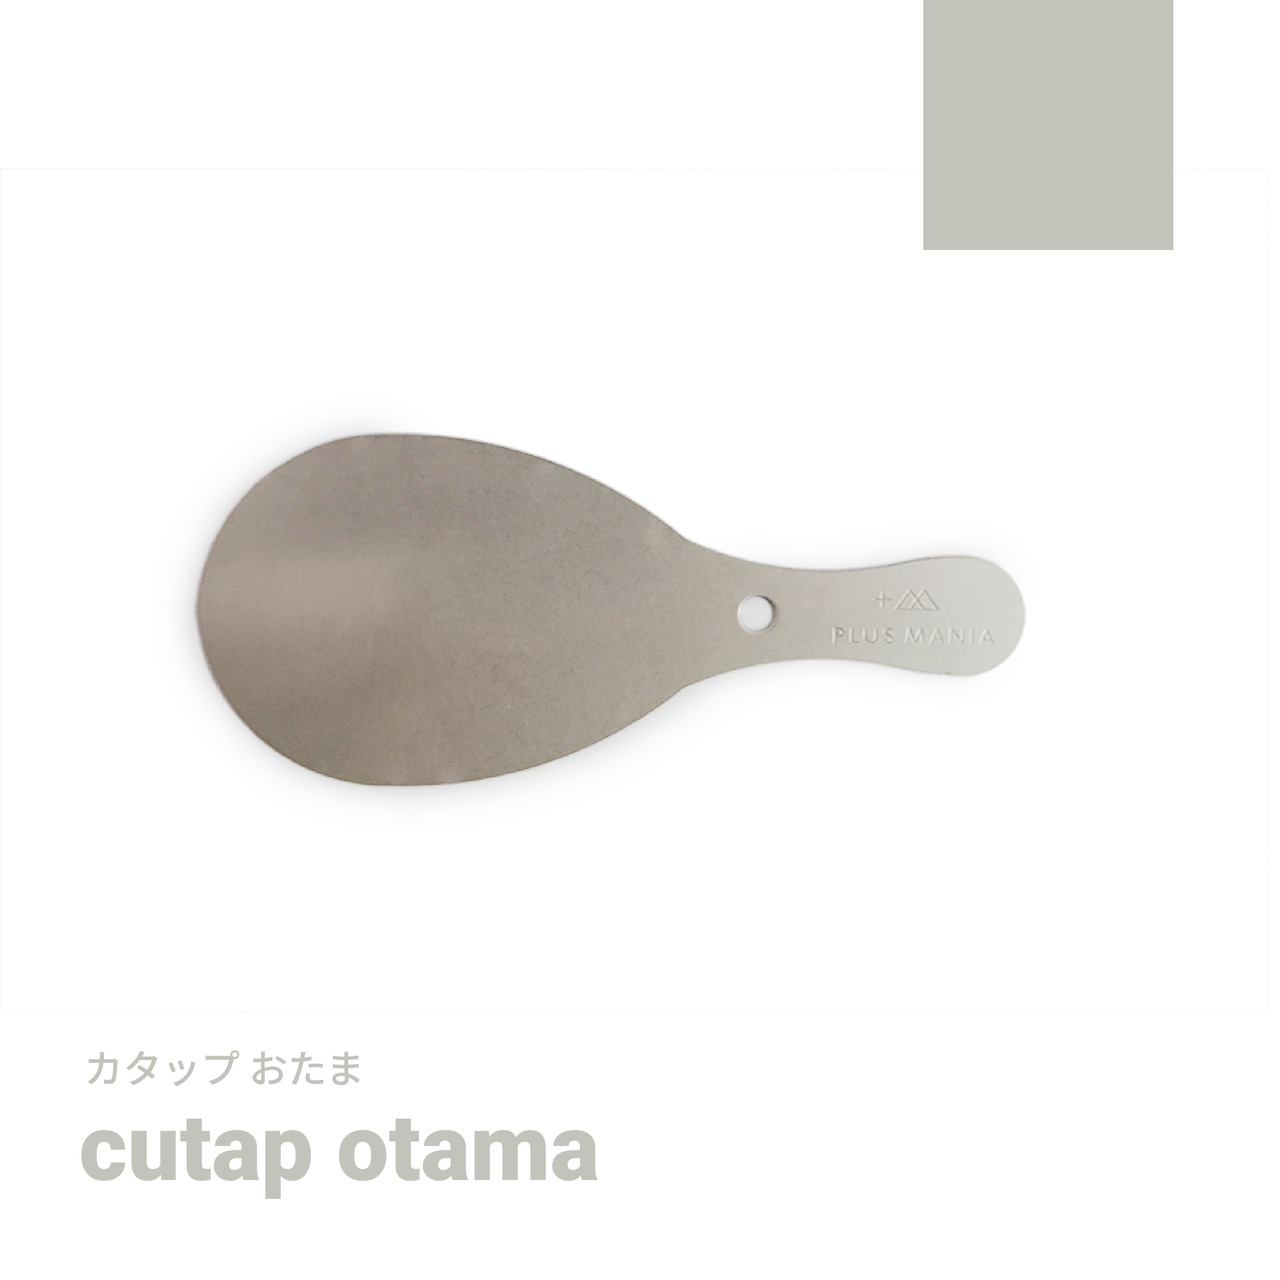 cutap otama [カタップオタマ]